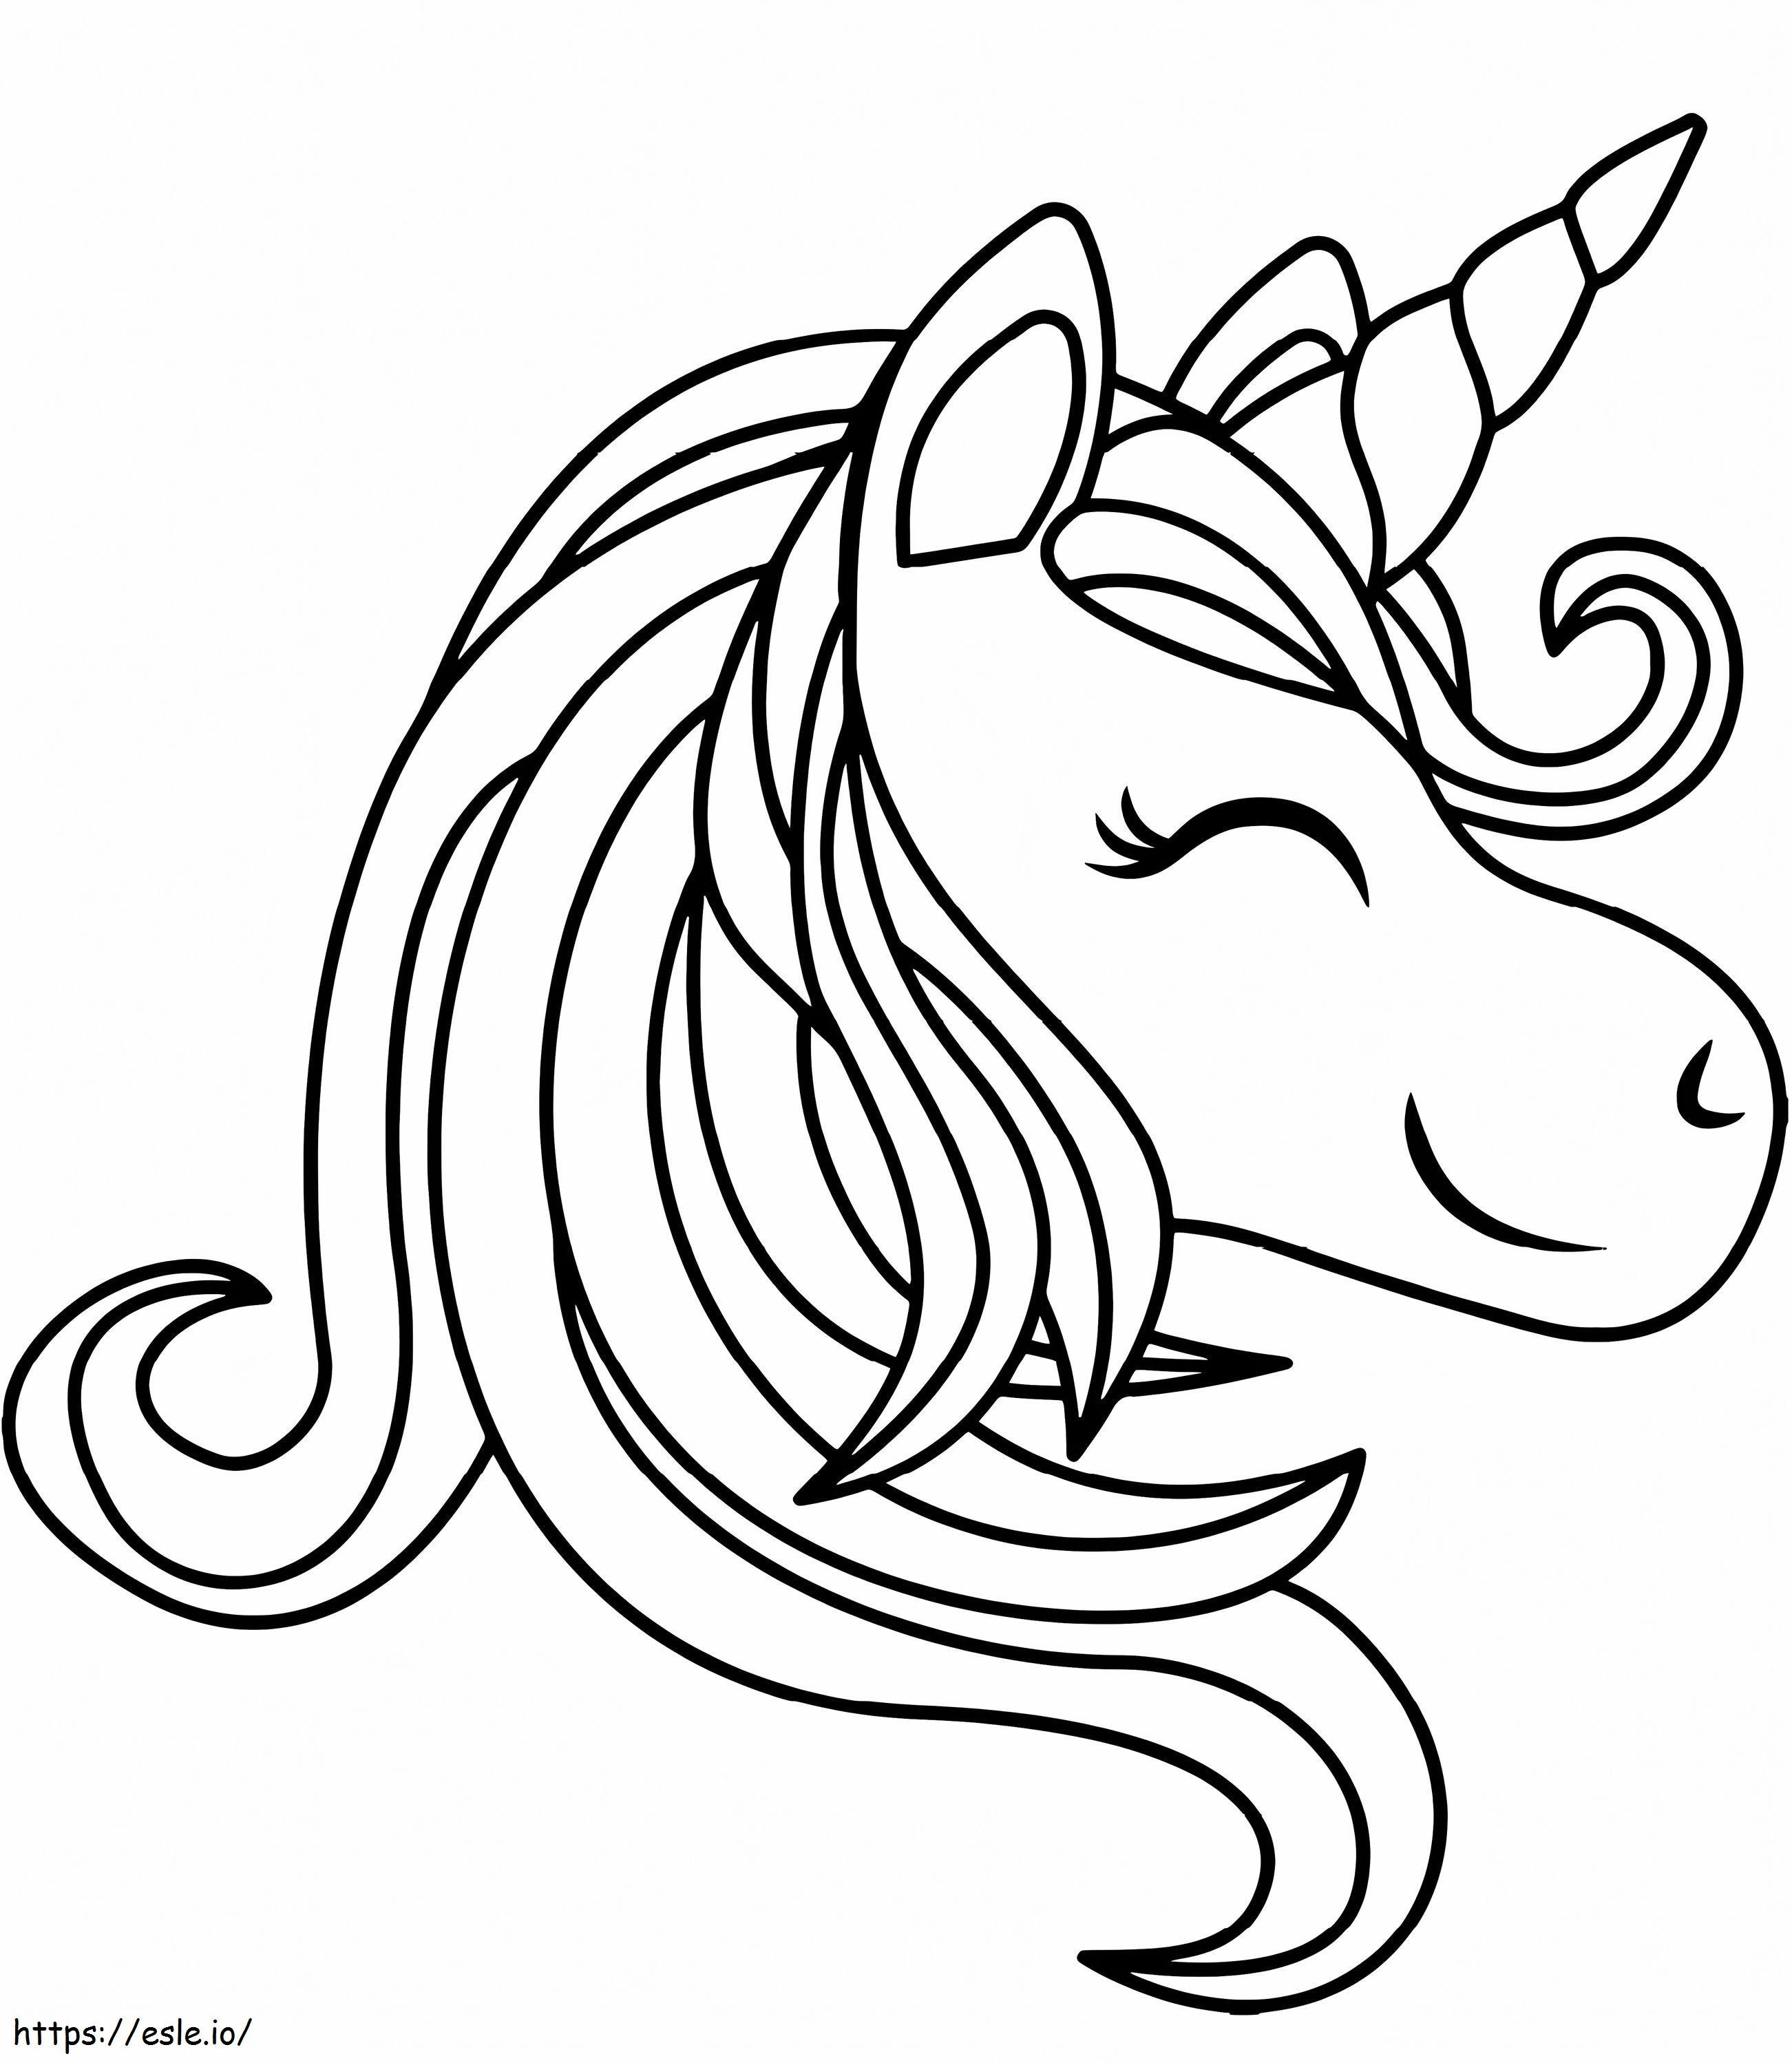  Cabeza Unicornio Sonriendo A4 para colorear